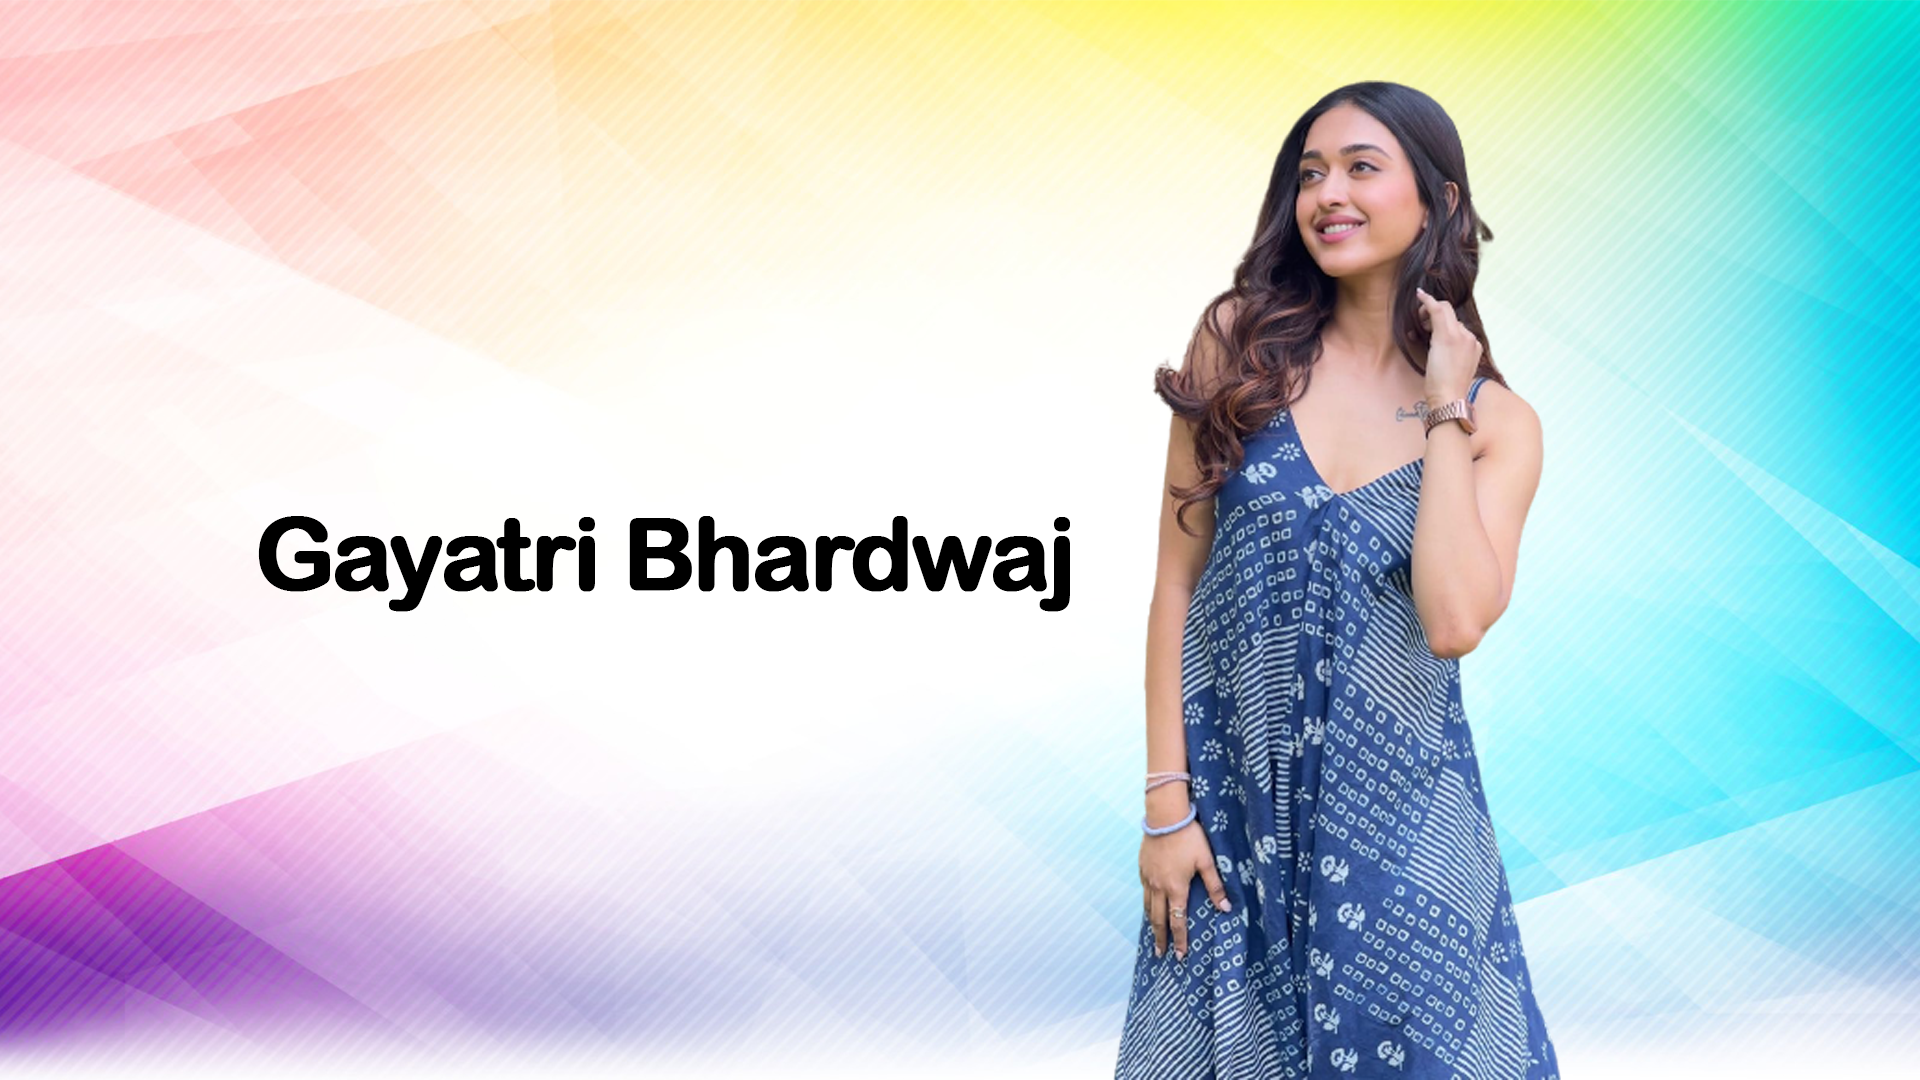 Gayatri Bhardwaj Biography